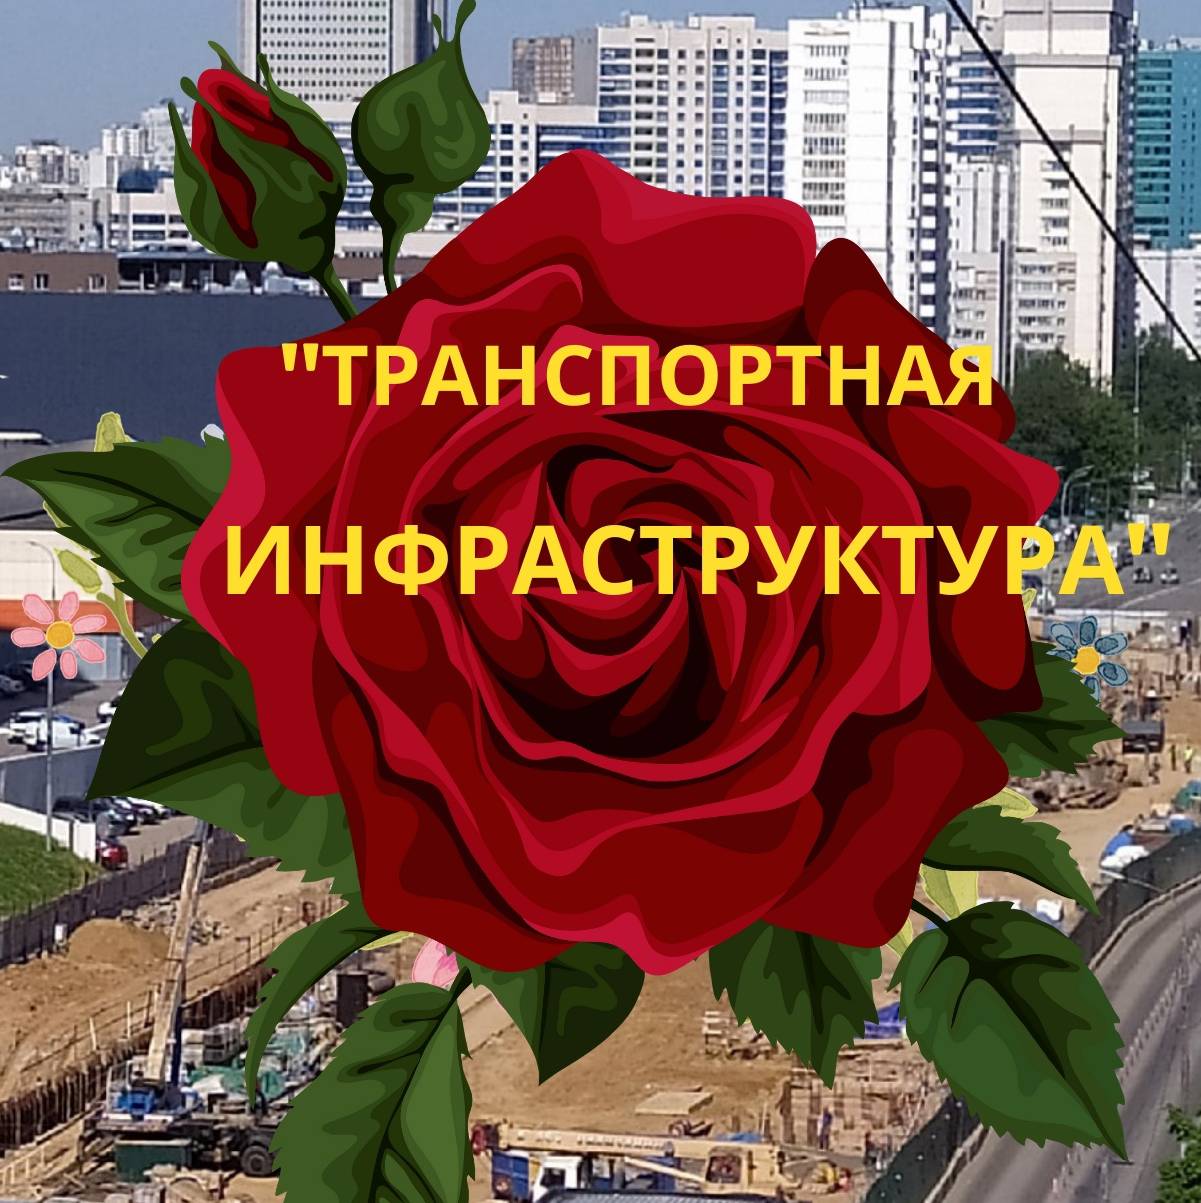 https://pic.rutubelist.ru/user/12/9b/129b8d86a51d3babde2a0746a15bdf96.jpg